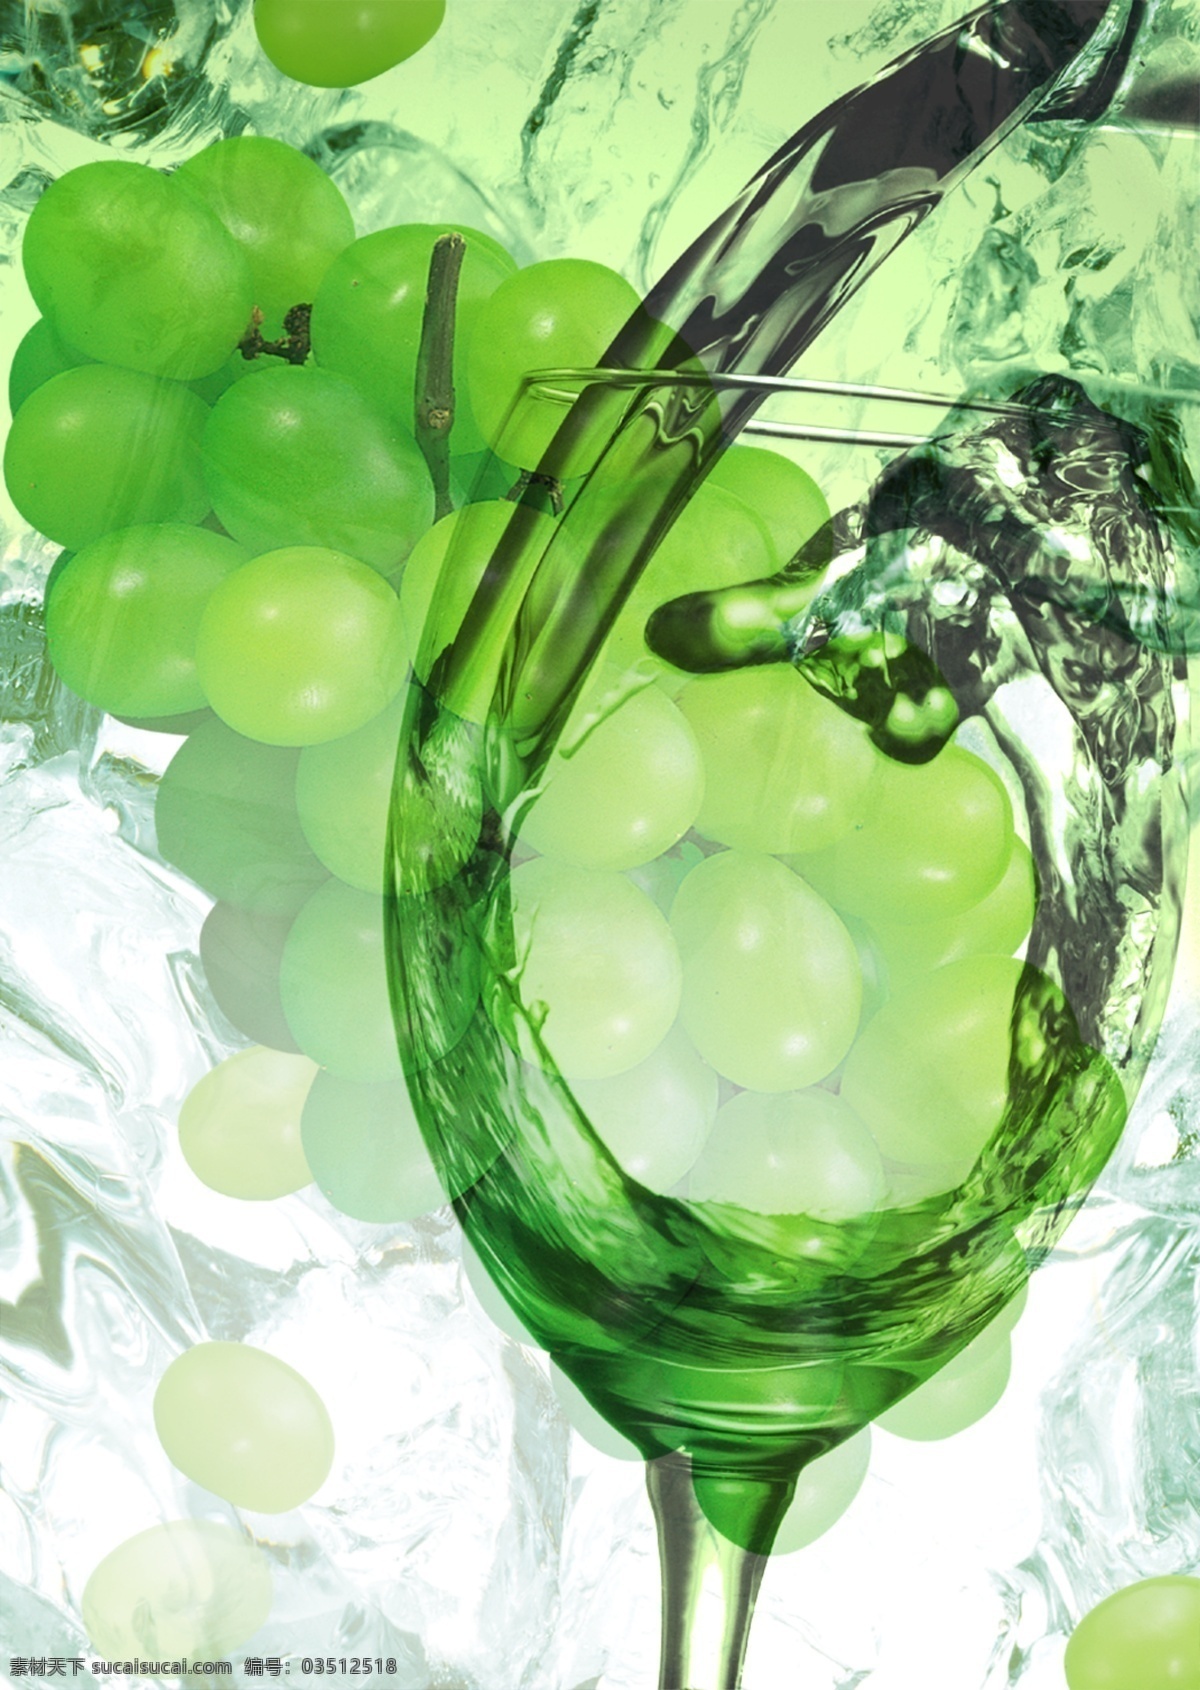 医疗 饮食 科学研究 分析 葡萄酒 成分 分层 科学实验 葡萄 水的动态 水中葡萄 样品分析 质检分析 饮食安全 调查检测分析 研究分析 psd源文件